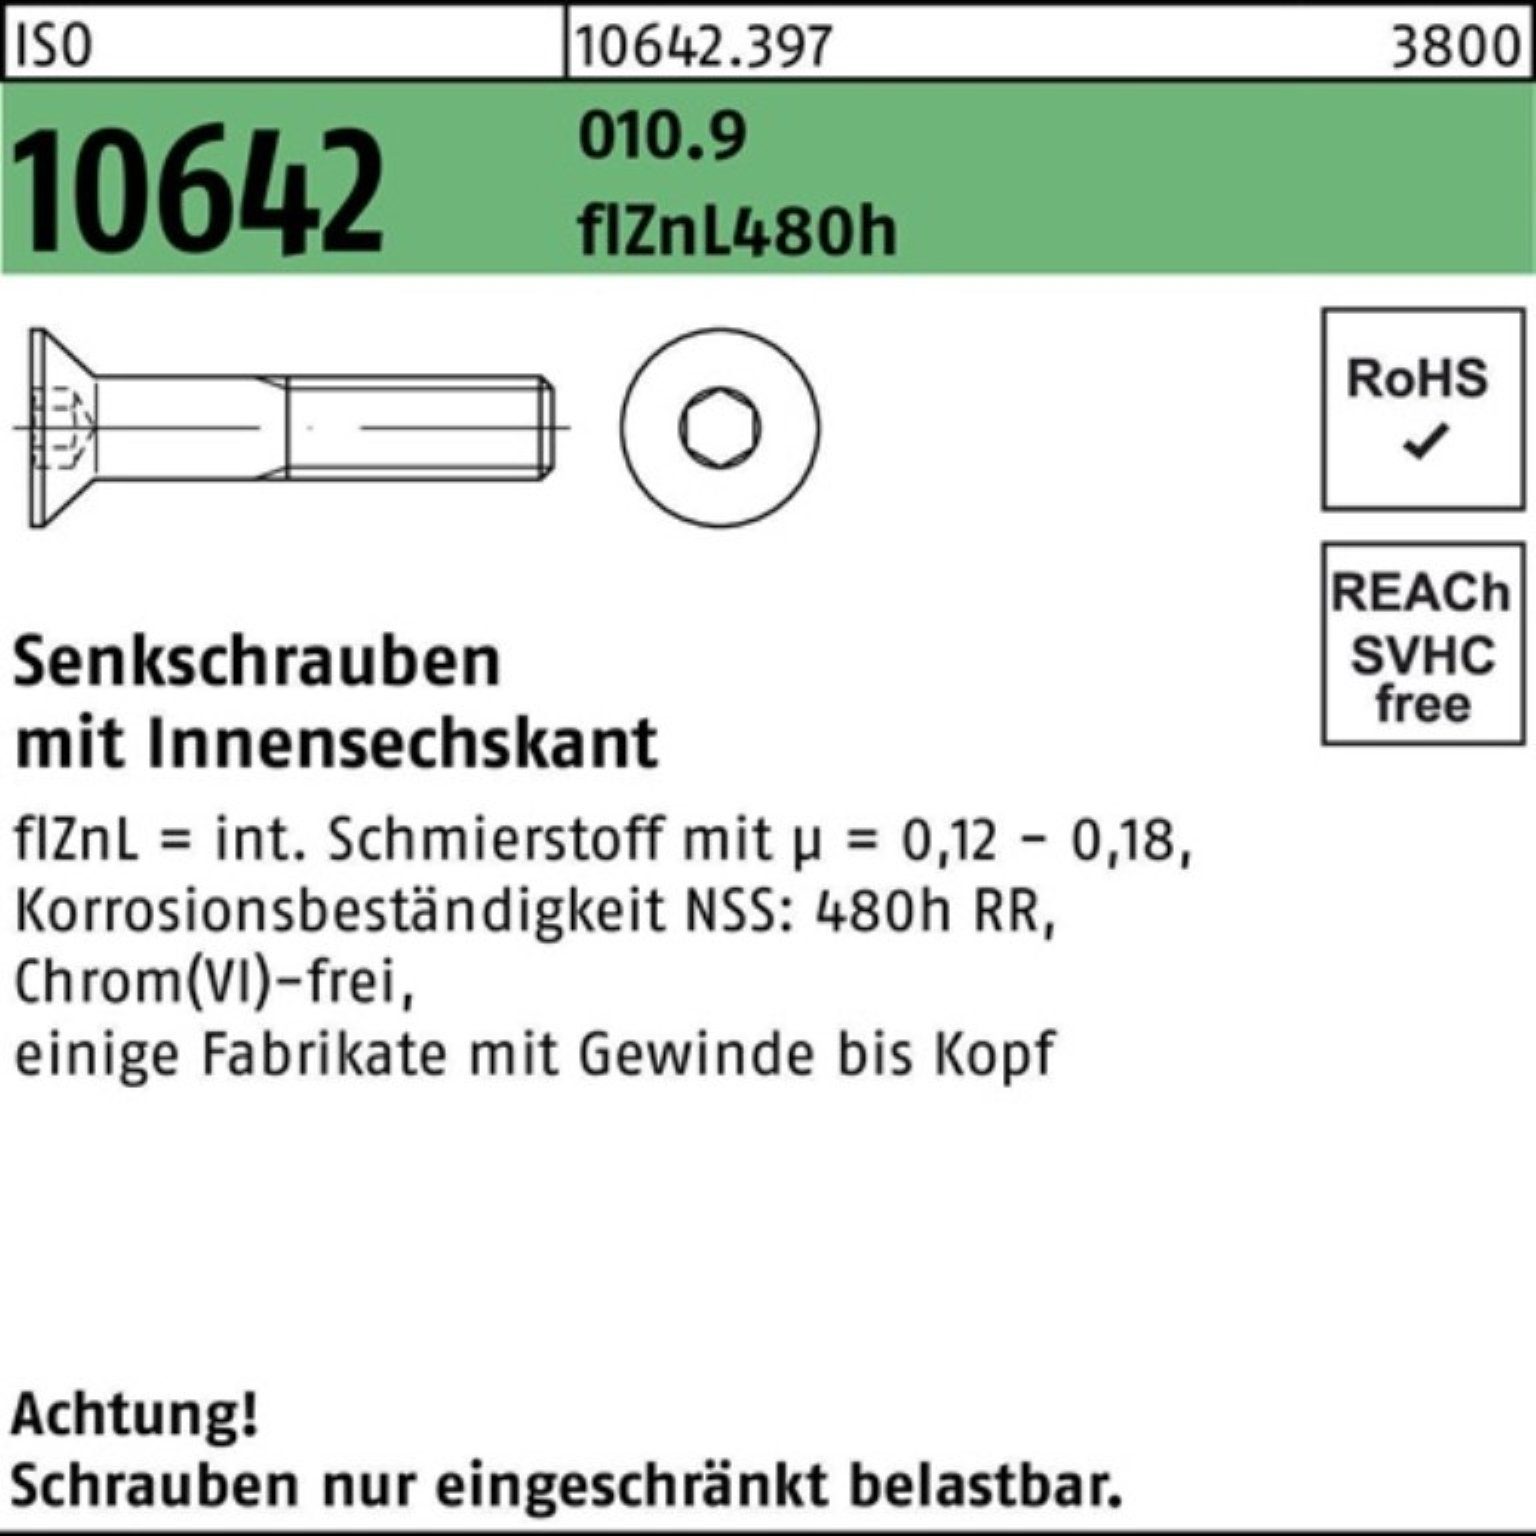 zi 010.9 Pack ISO Innen-6kt 480h 10642 100er M10x60 Senkschraube Reyher flZnL Senkschraube